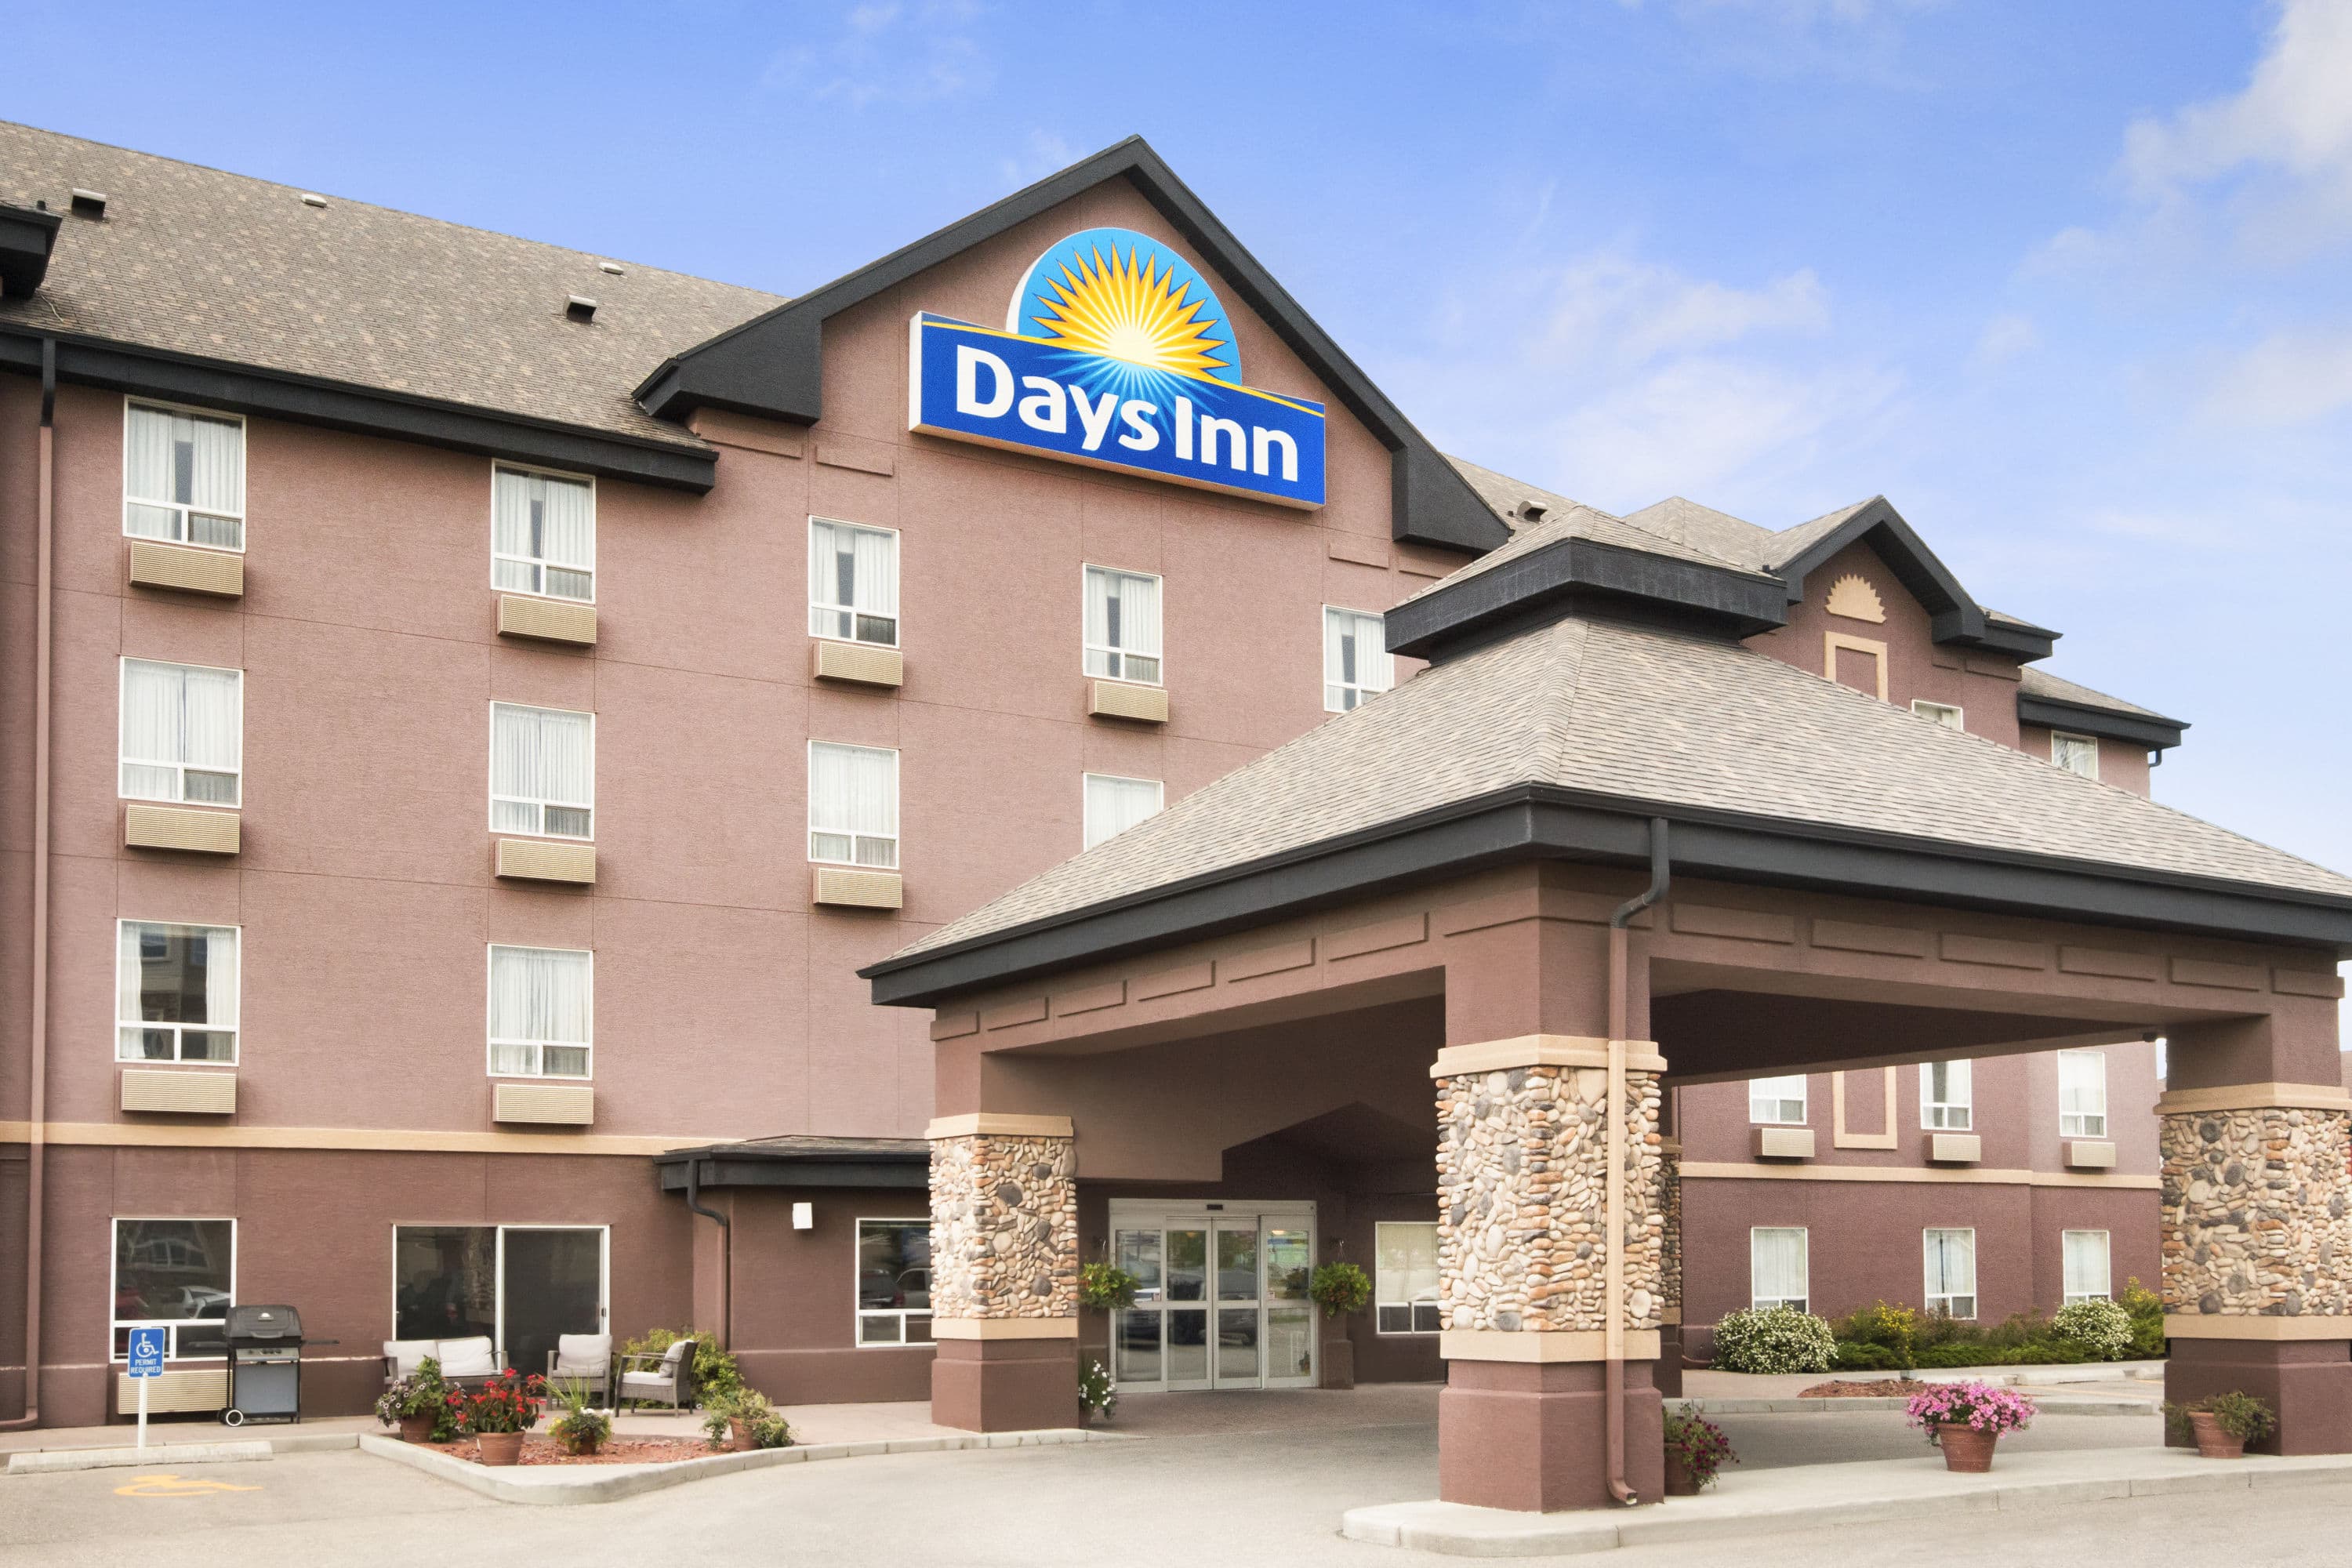 Days Inn By Wyndham Calgary Airport Calgary Ab Hotels 5041